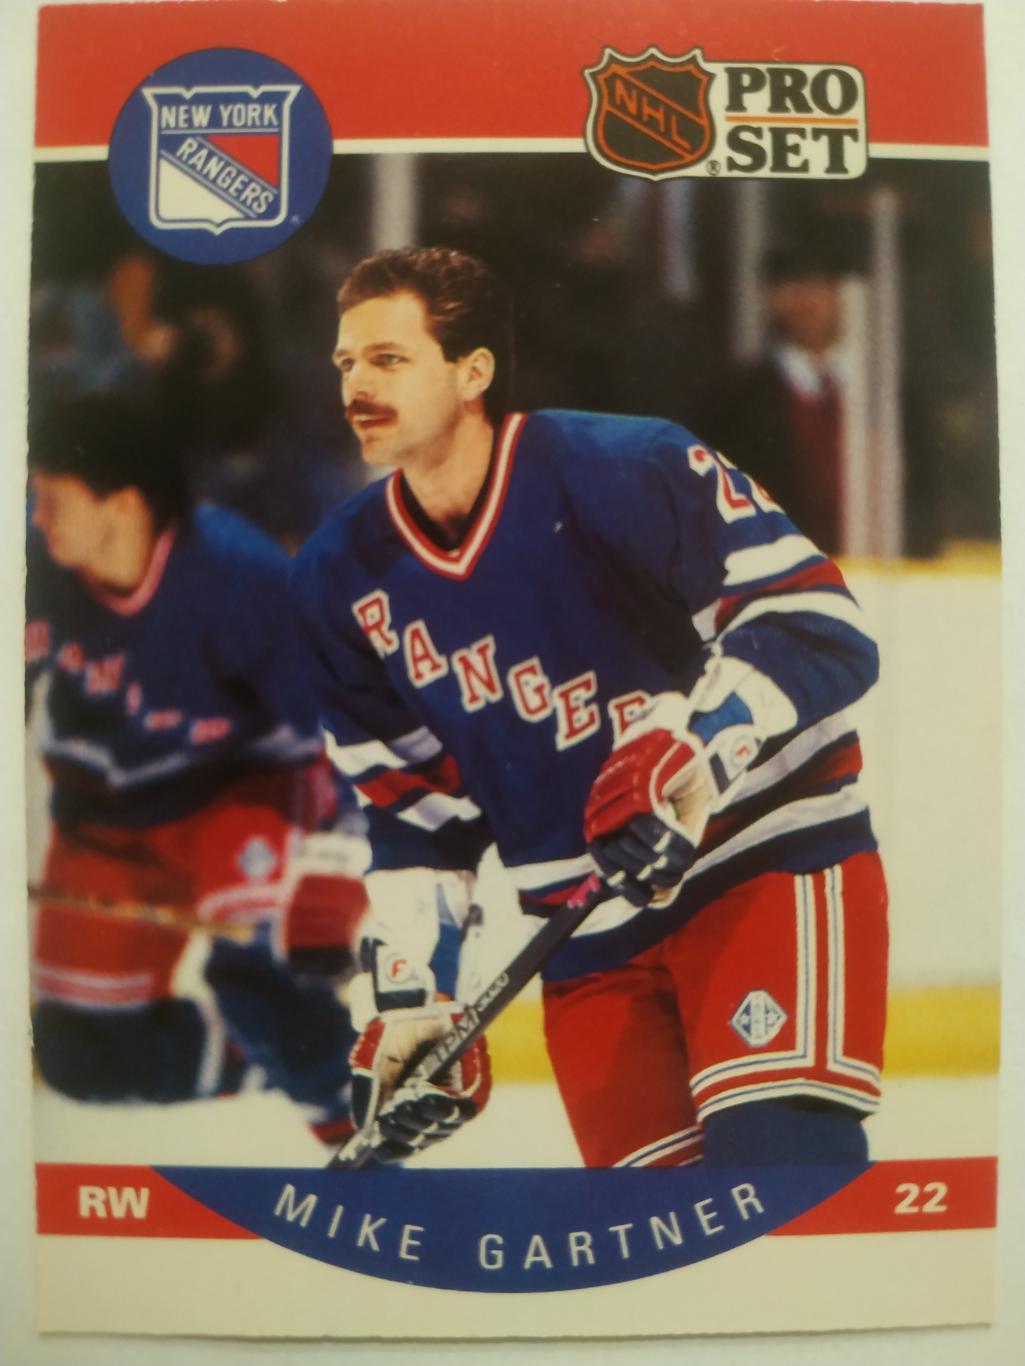 ХОККЕЙ КАРТОЧКА НХЛ PRO SET 1990 NHL MIKE GARTNER NEW YORK RANGERS #196